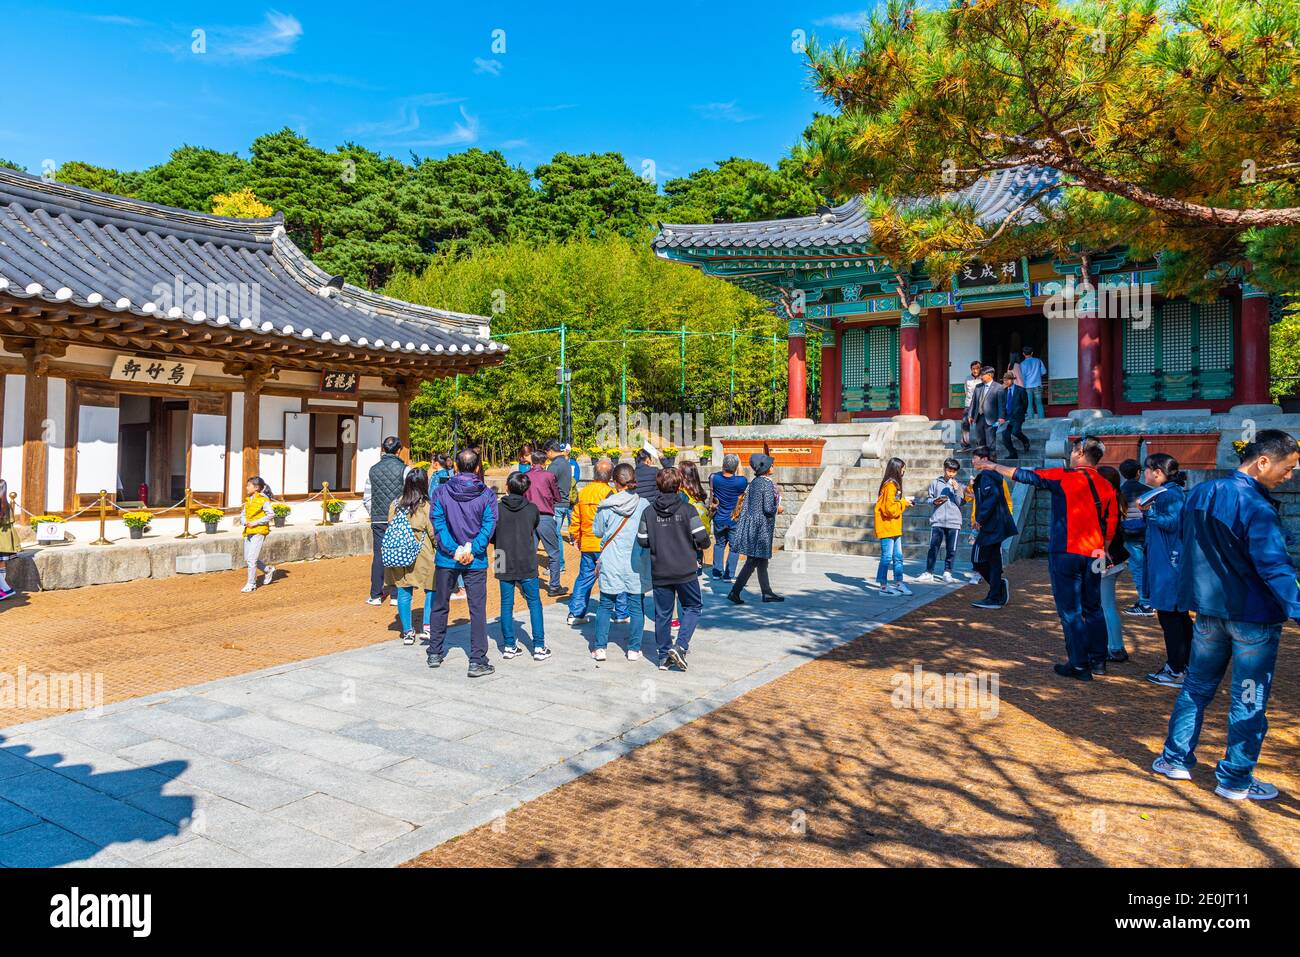 GANGNEUNG, KOREA, OCTOBER 26, 2019: Ojukheon House at Gangneung, Republic of Korea Stock Photo